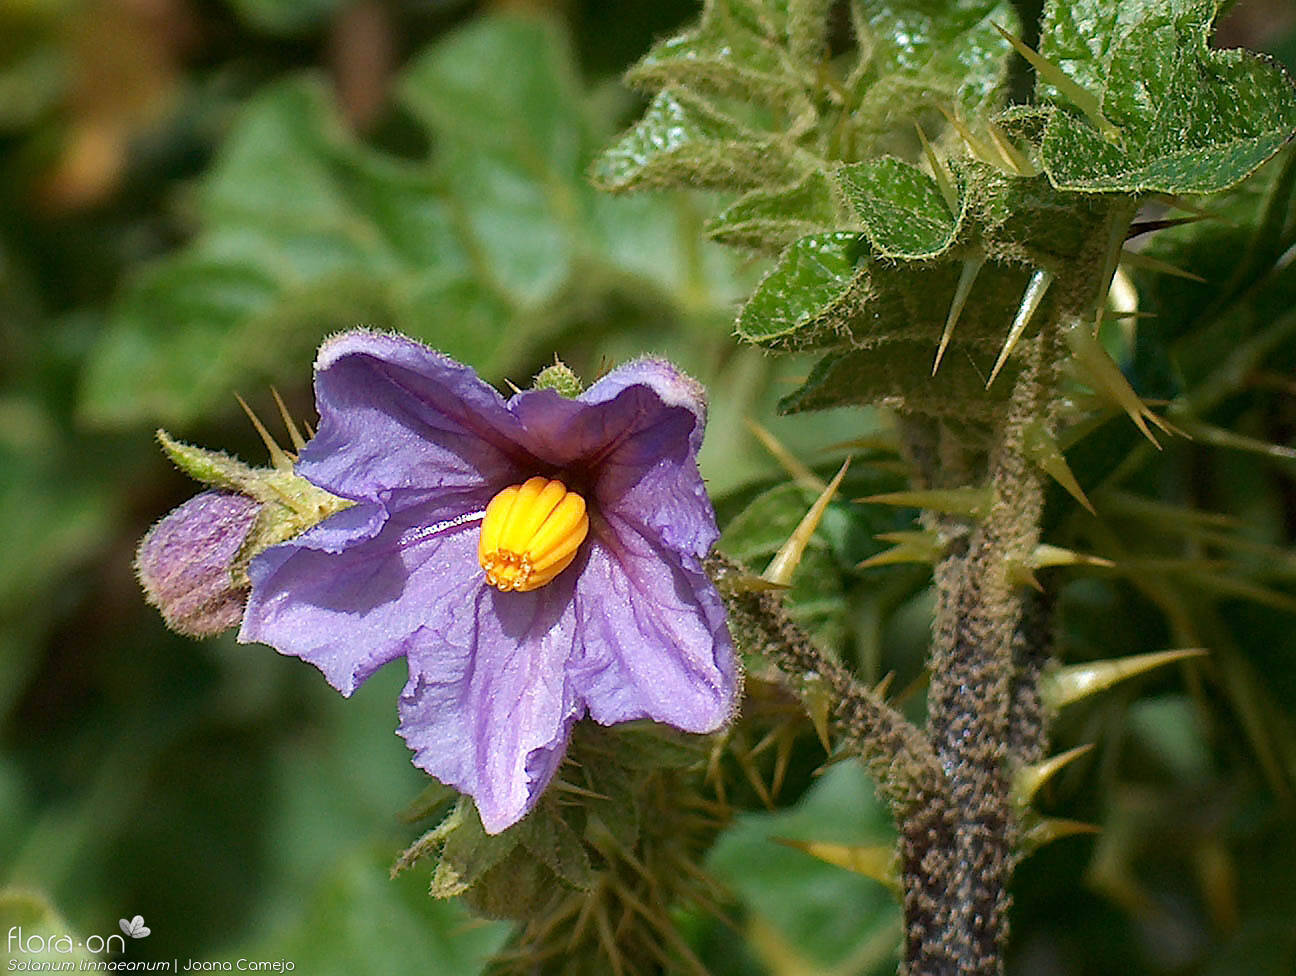 Solanum linnaeanum - Flor (close-up) | Joana Camejo; CC BY-NC 4.0